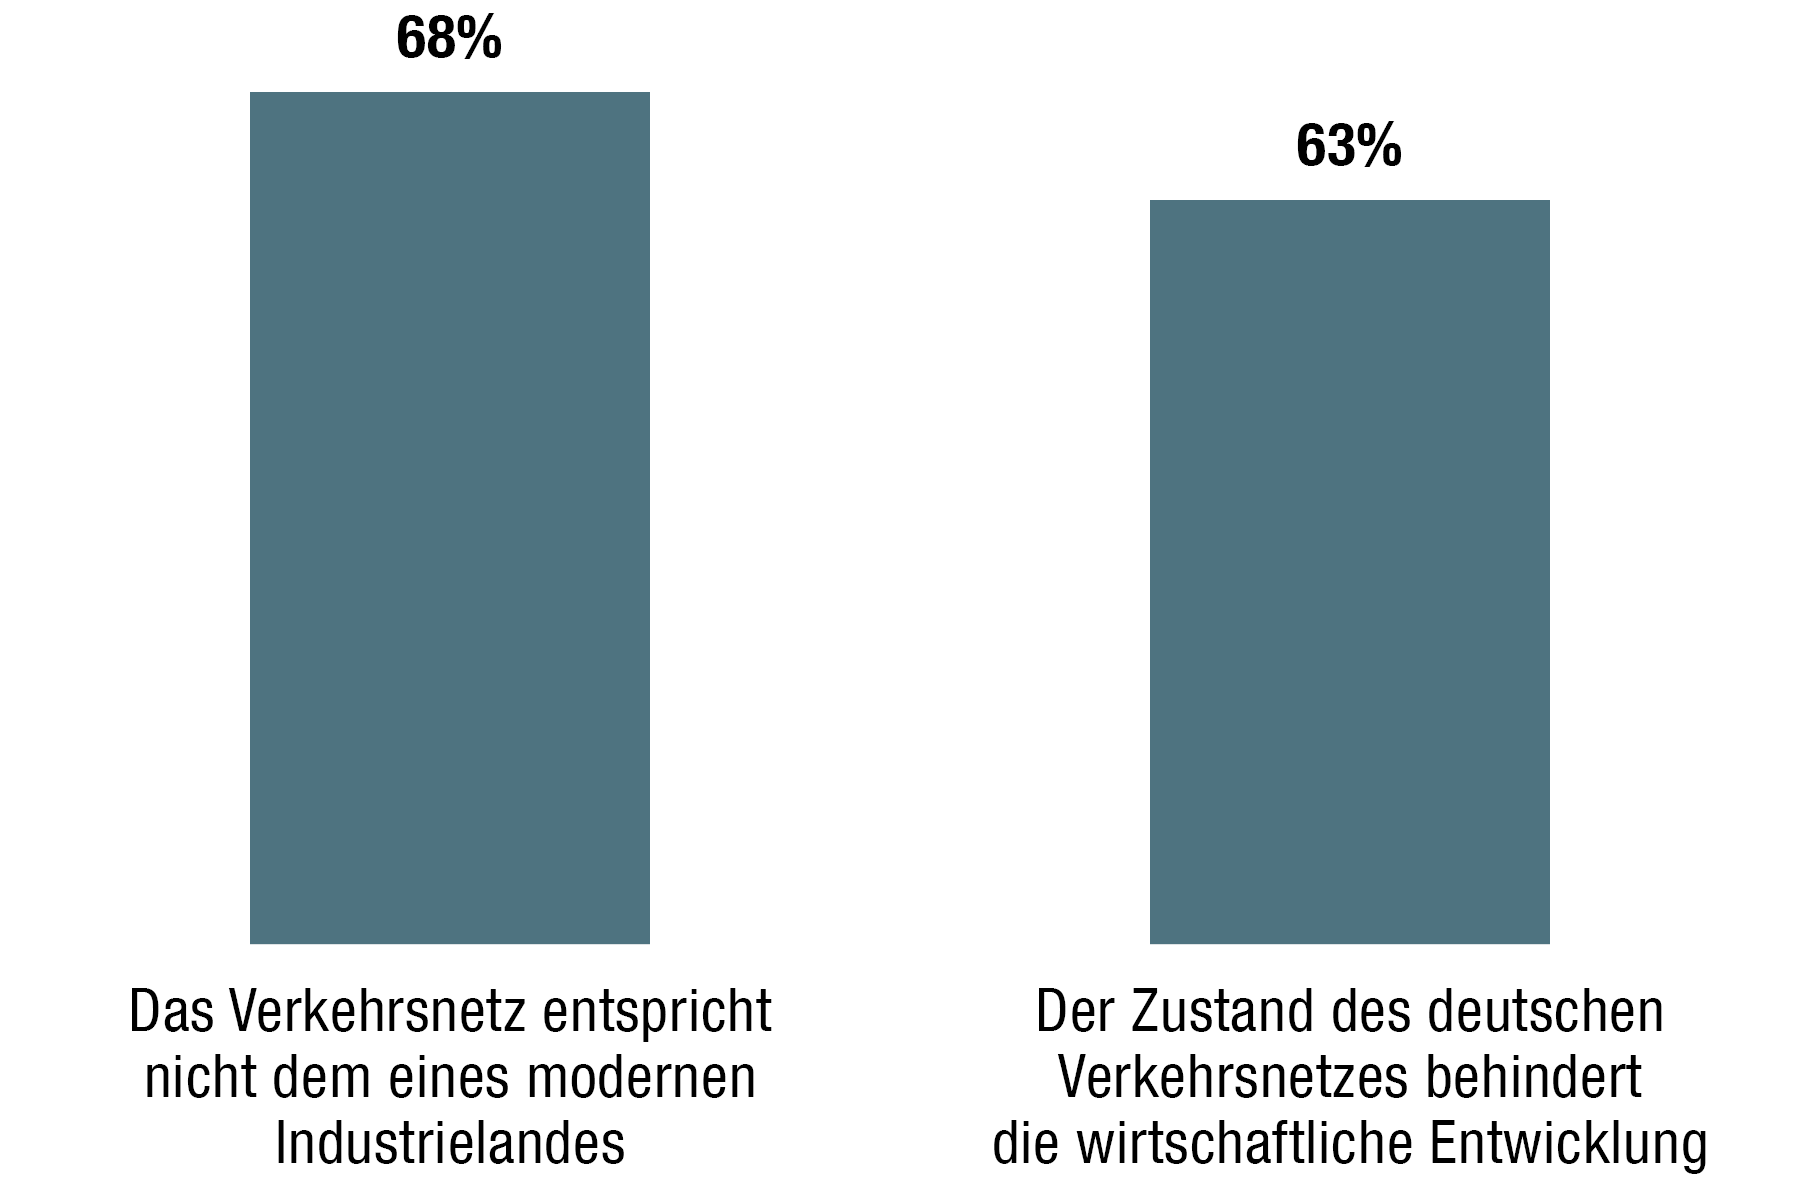 Balkendiagram: 68% sind der Meinung, das Verkehrsnetz entspricht nicht dem eines modernen Industrielandes und 63% denken, es behindert die wirtschaftliche Entwicklung.